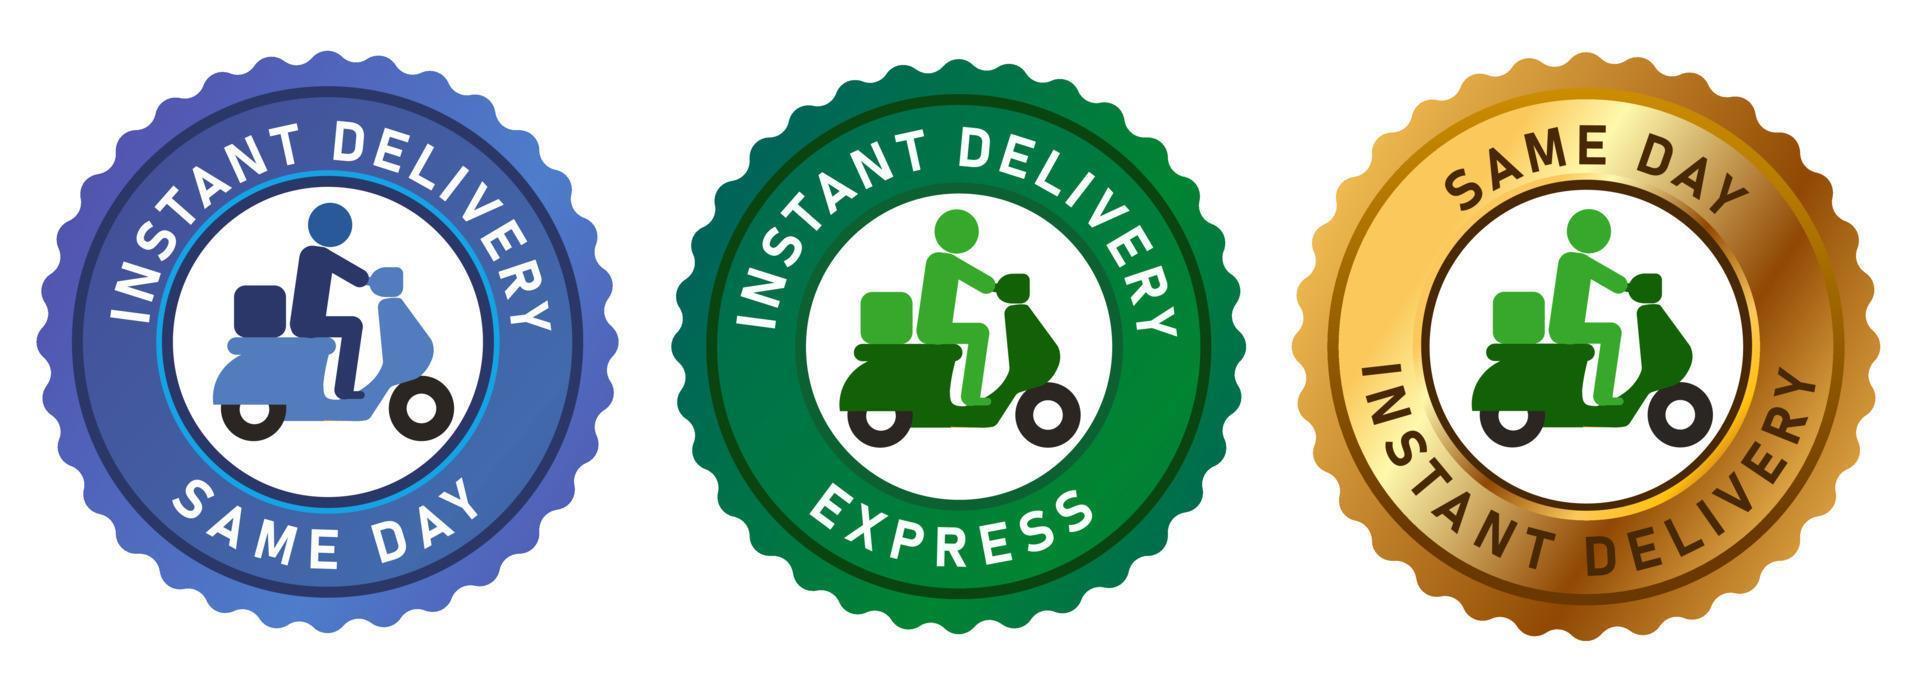 Emblem-Tag-Etikett Express-Lieferung am selben Tag Express-Abzeichen mit Fahrrad-Motorrad-Gold-Grün-Blau-Vektorsatz vektor